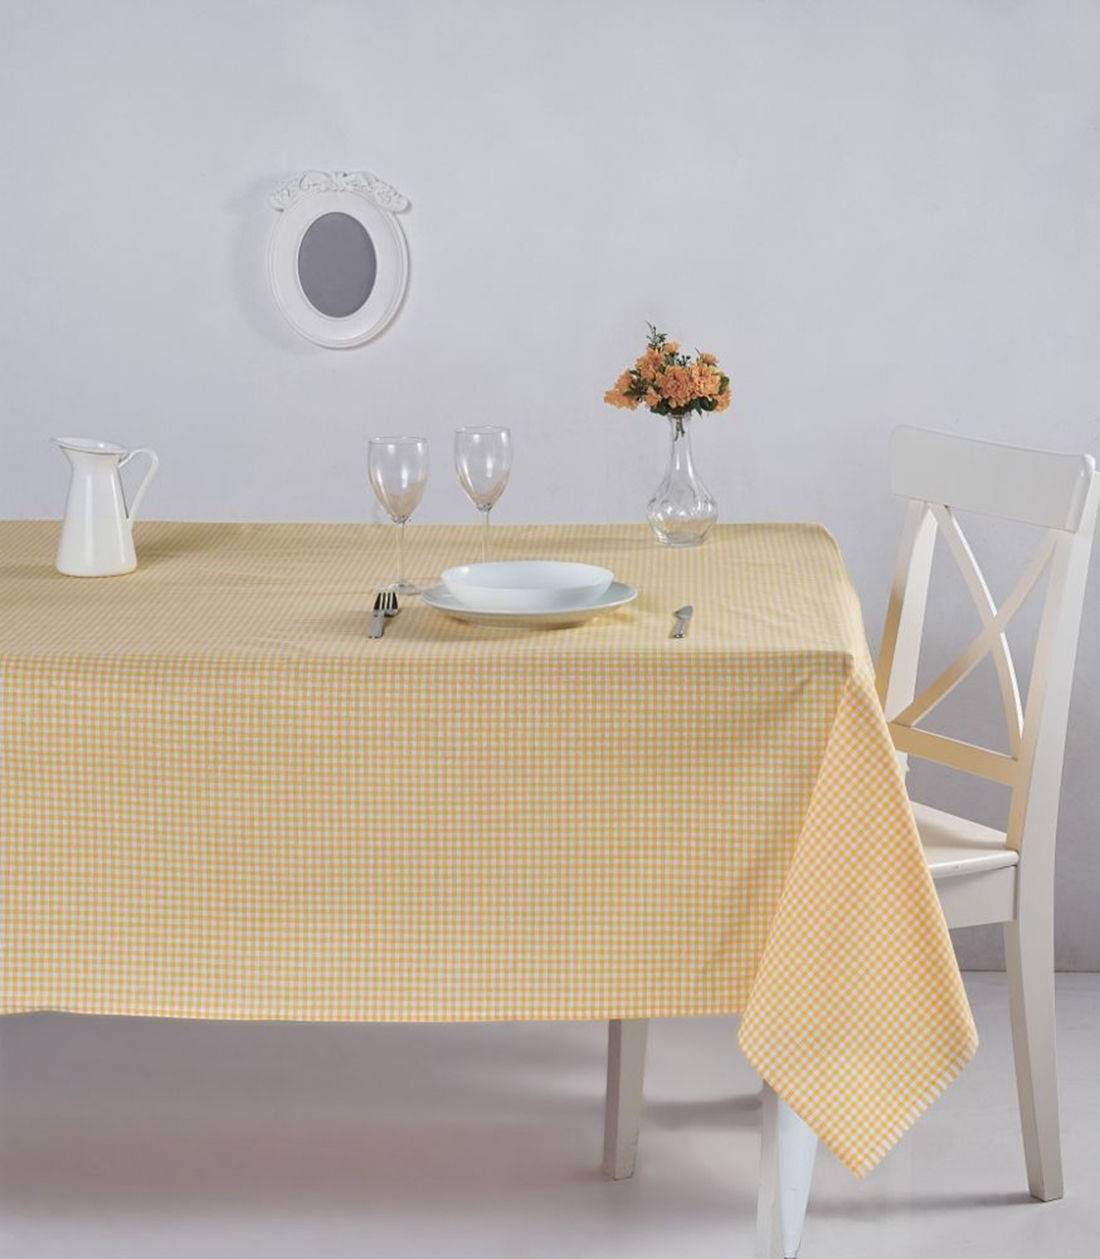 Bertier Tischdecke 170x170cm Baumwolle Muster klein gelb und weiß kariert